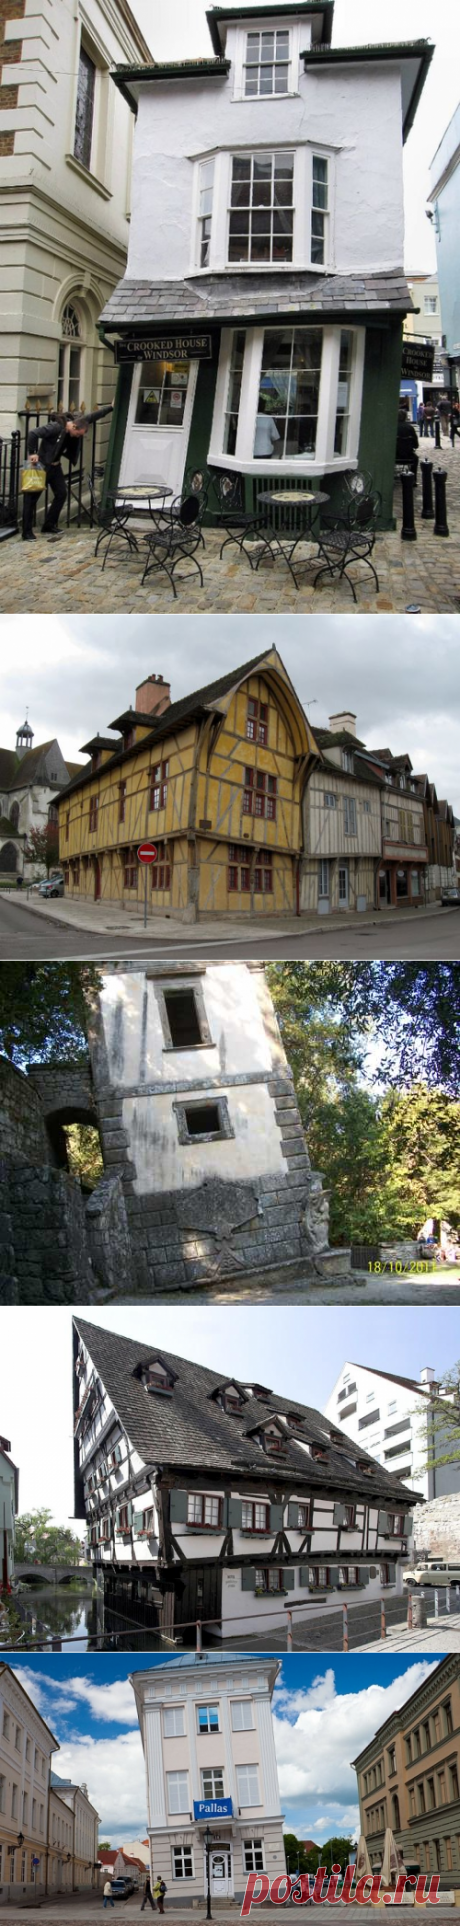 кривой дом в г. Виндзоре неформатный дом в Труа (Франция) дом в Тарту Эстония падающий дом Бомарцо падающий дом в Ульме